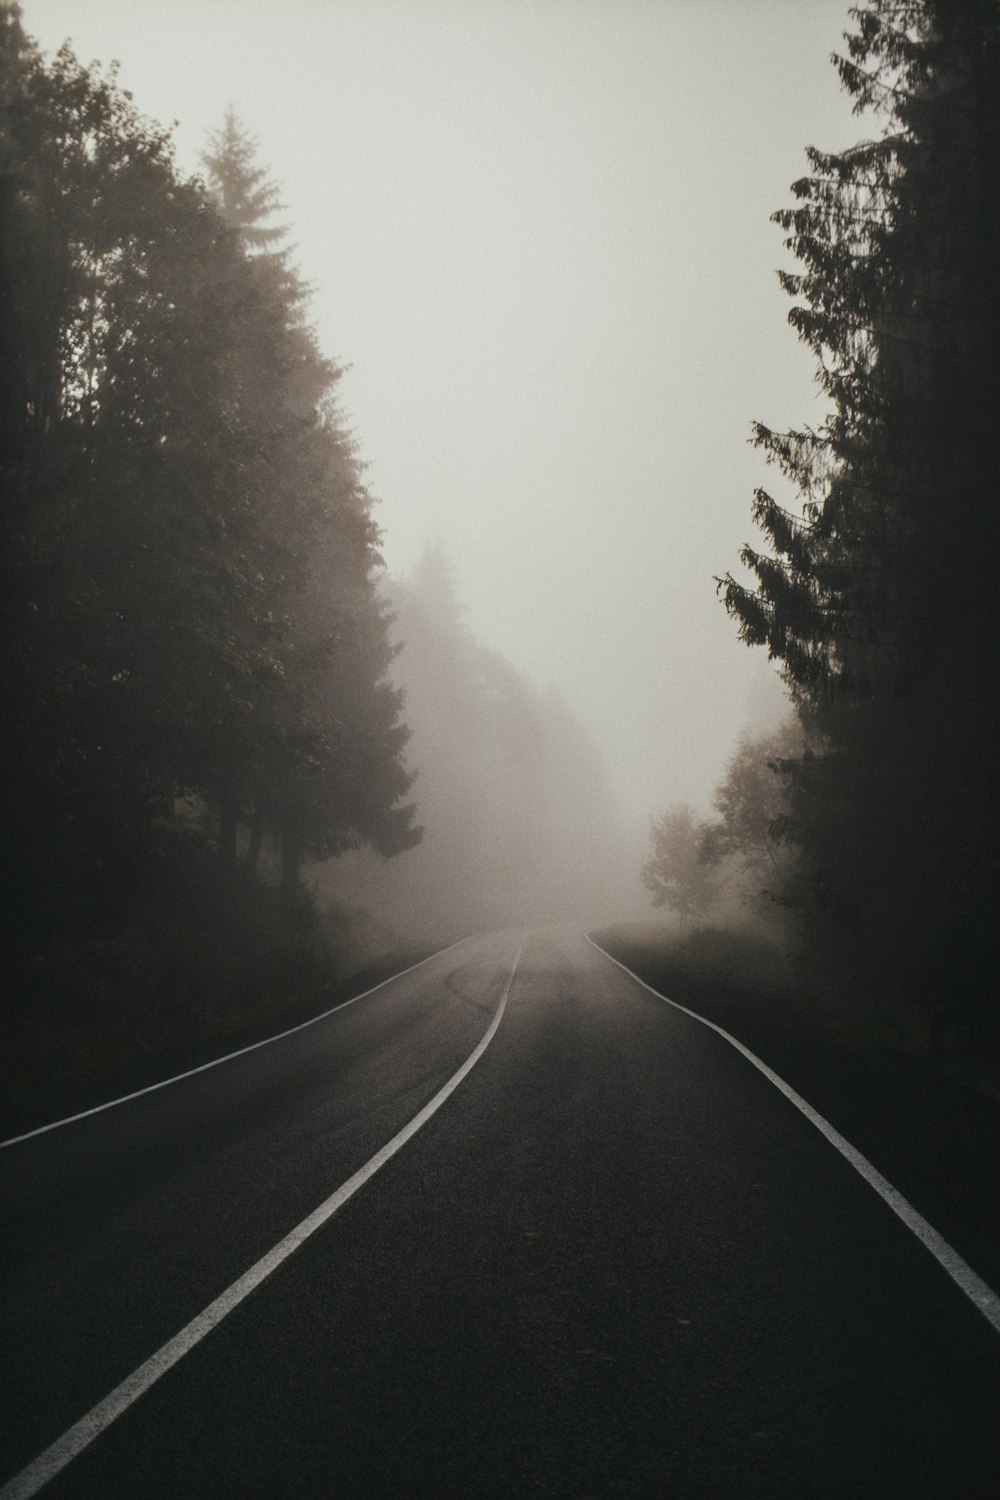 route goudronnée noire entre des arbres verts couverts de brouillard pendant la journée